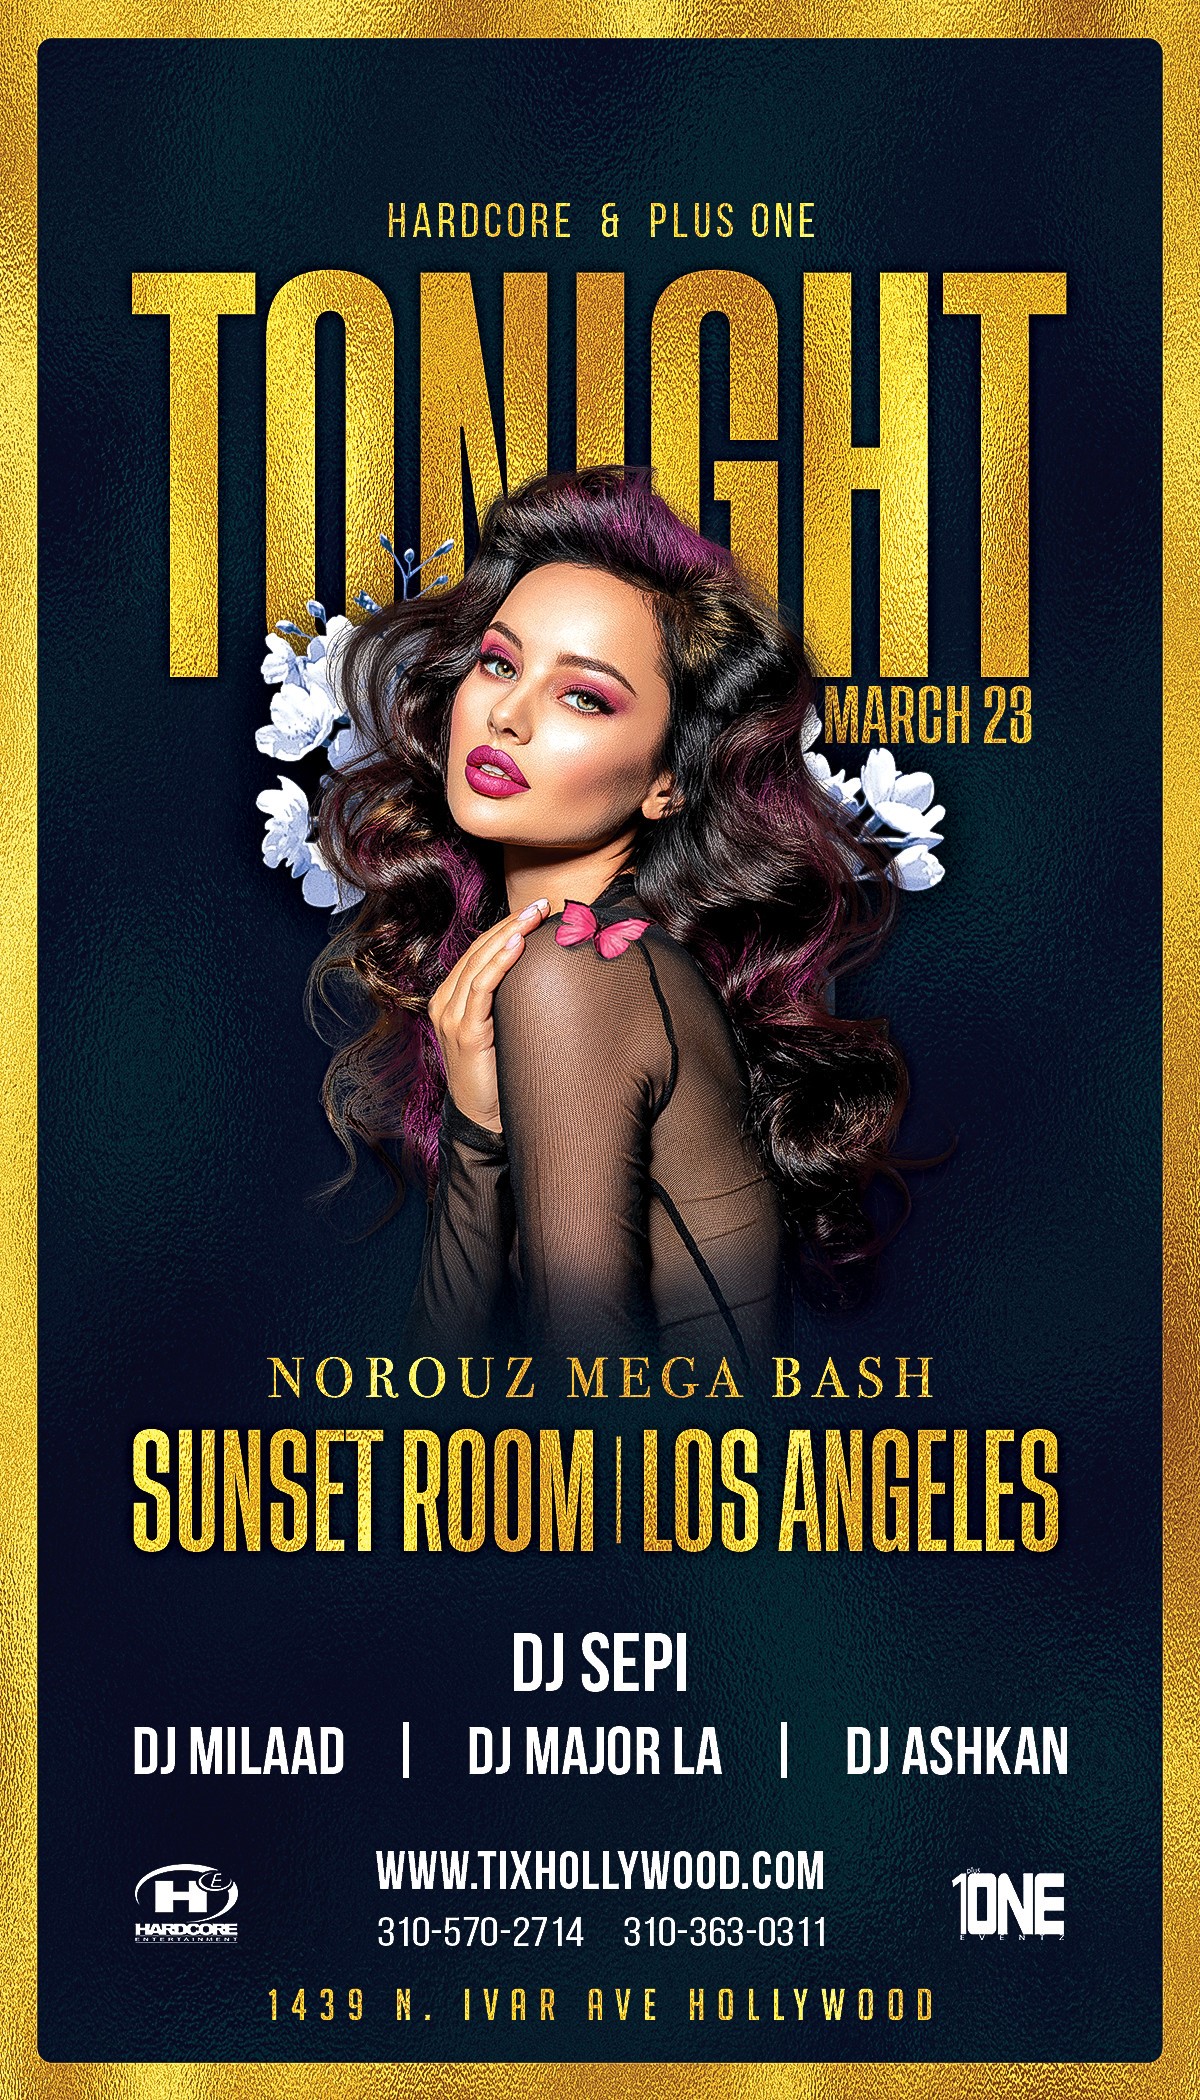 Norouz Mega Bash in Los Angeles @ SUNSET ROOM Nightclub! Saturday, March 23, 2024 on mar. 23, 22:00@Sunset Room - Compra entradas y obtén información enHARDCORE & PLUS ONE tixhollywood.com